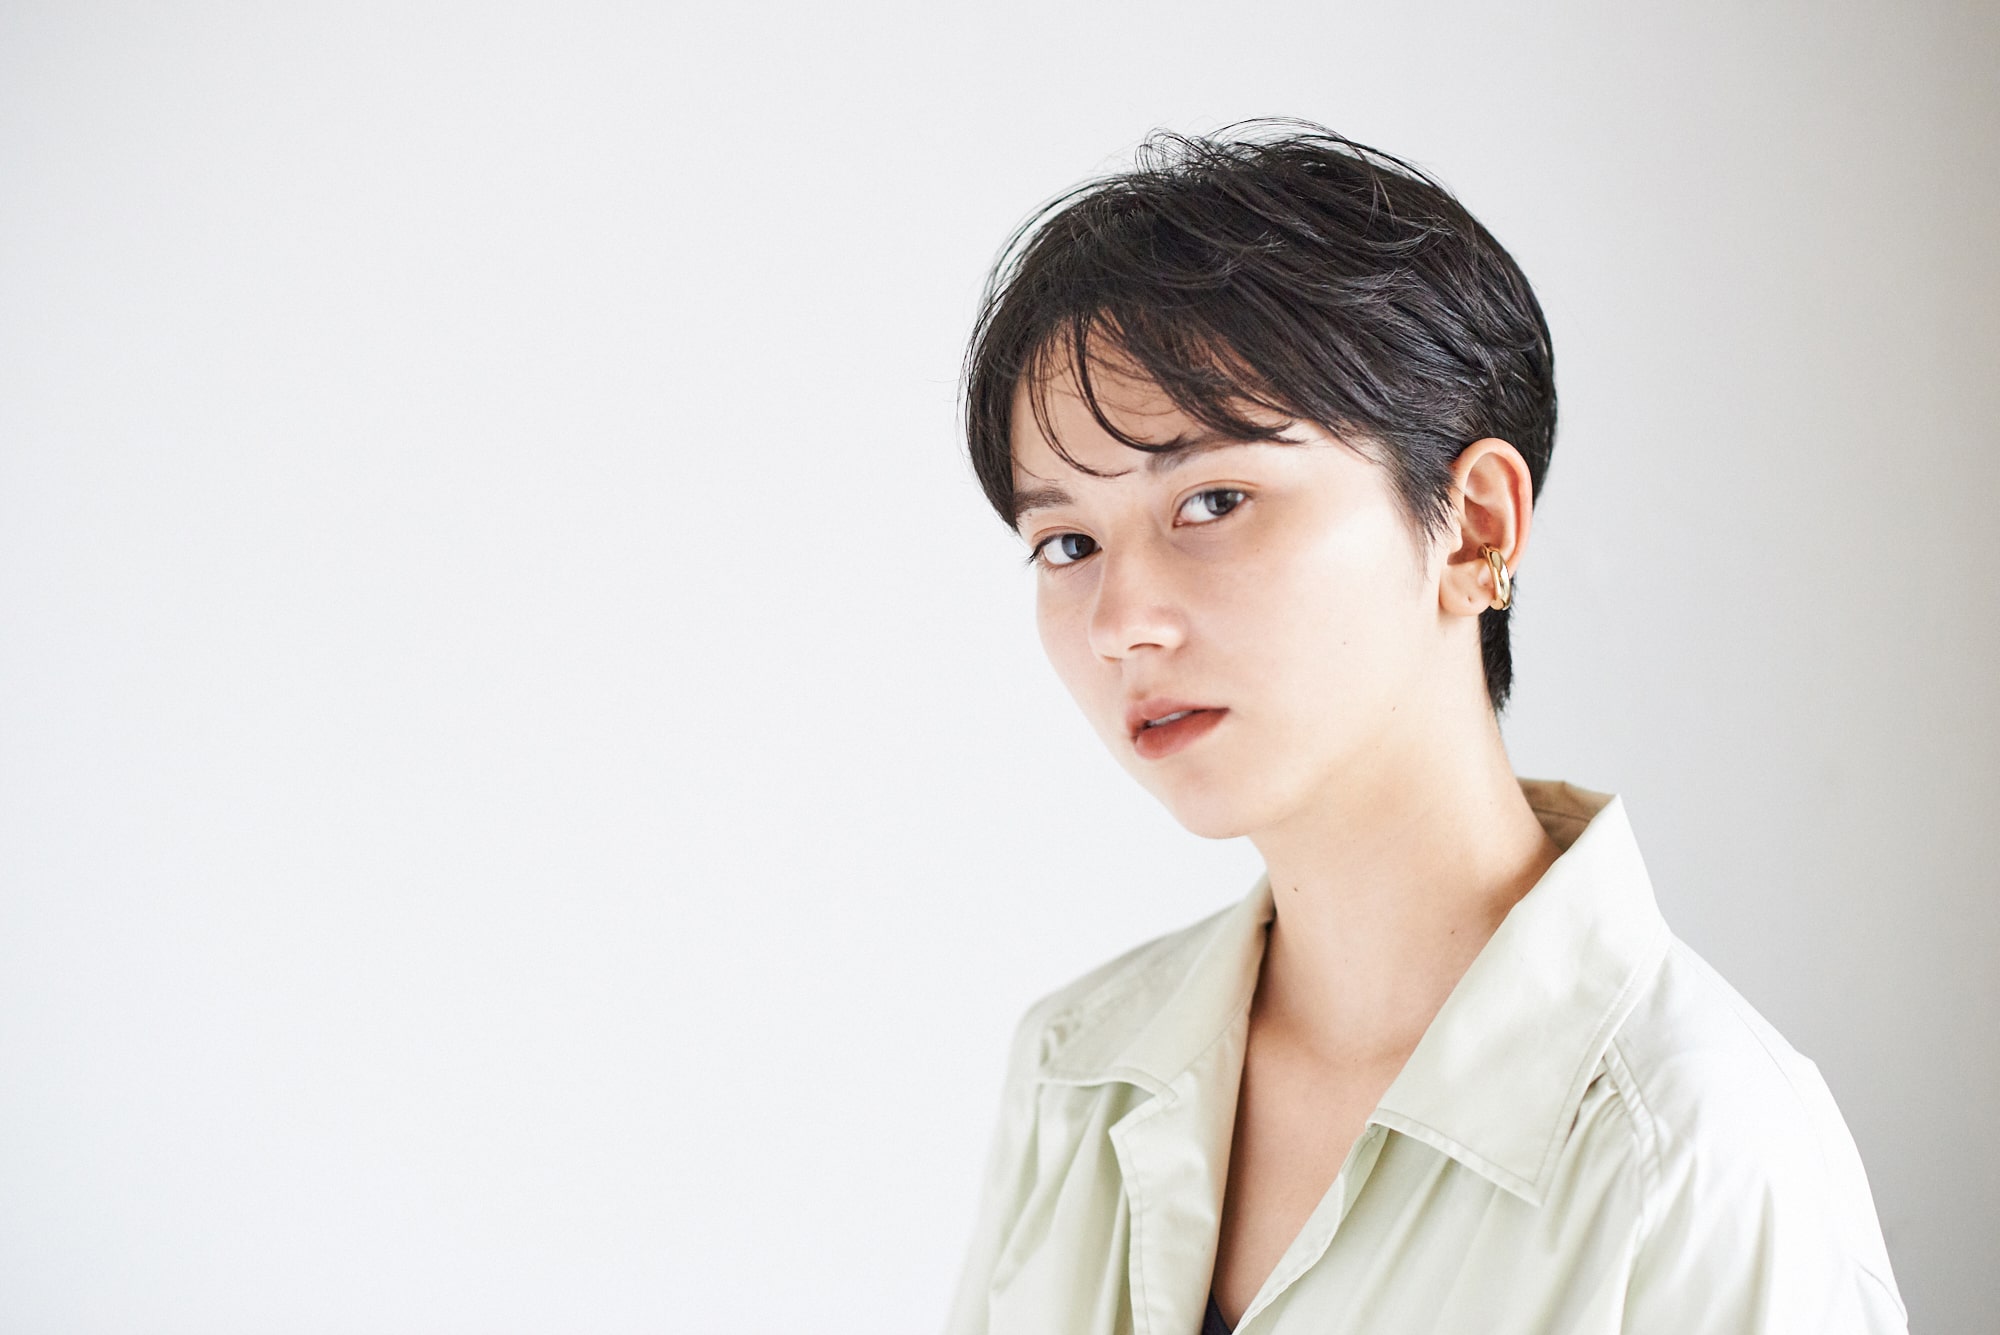 美容師のカット技術 Kate 豊田光信さん流 ツーセクションで作るジェンダーレスな黒髪ショート 2 モアリジョブ